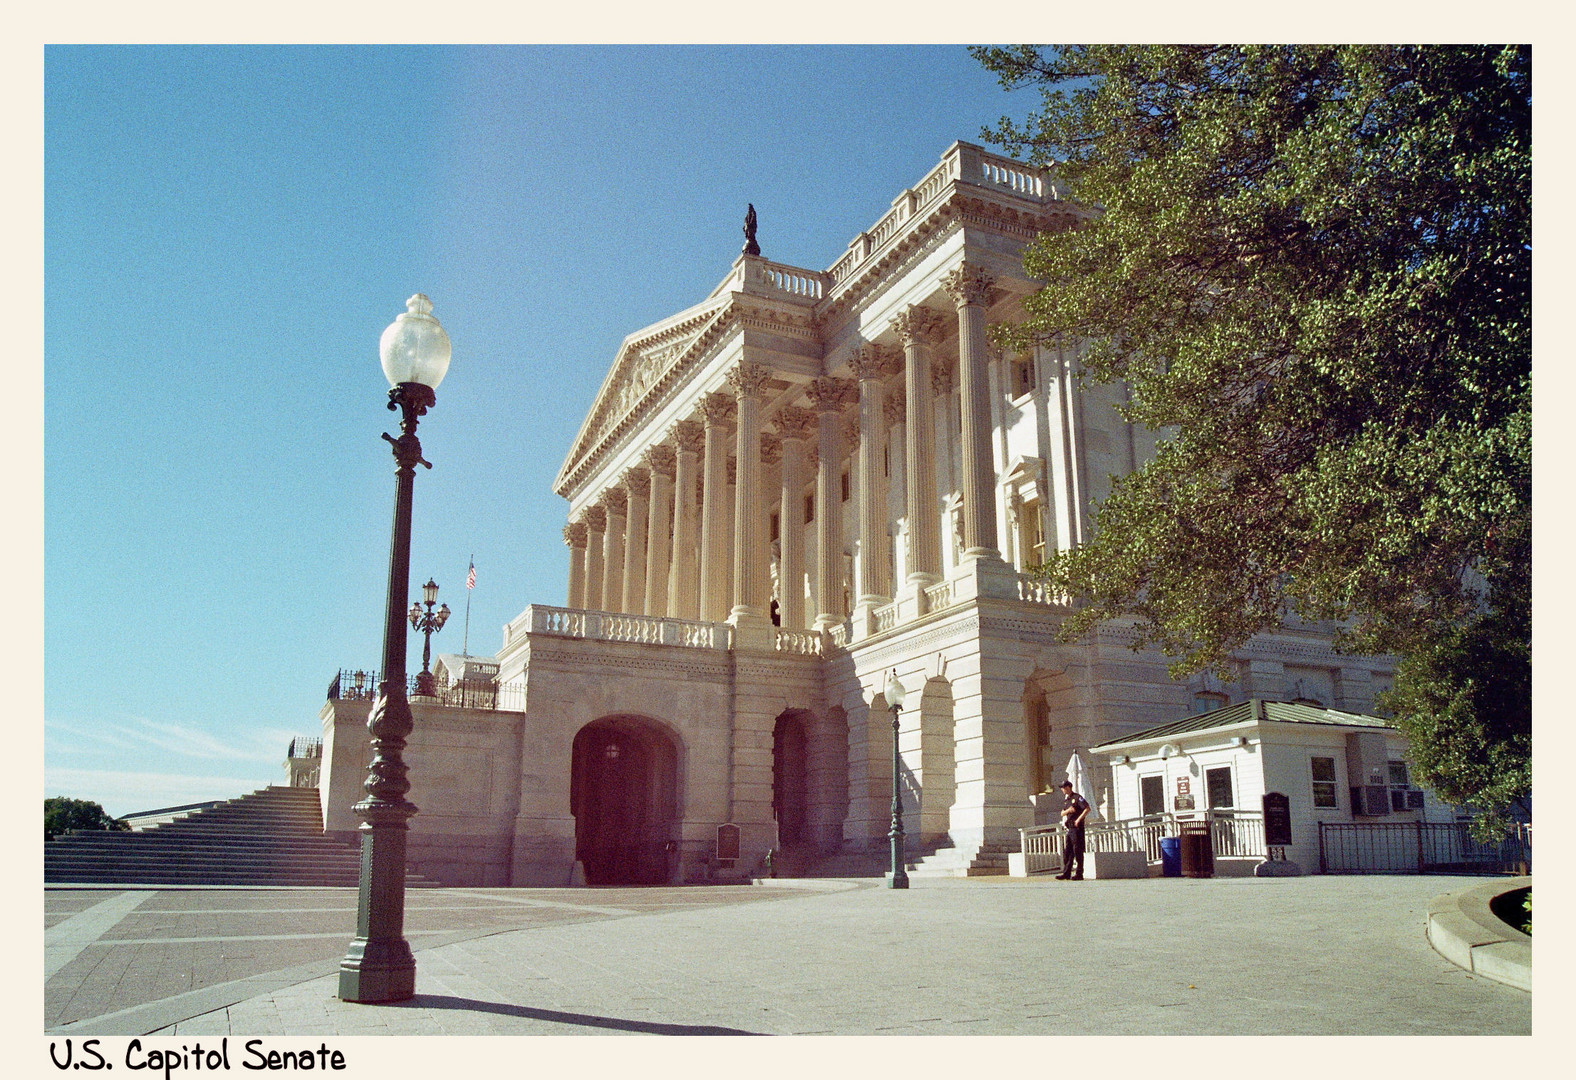 U.S. Capitol - Oktober 2010